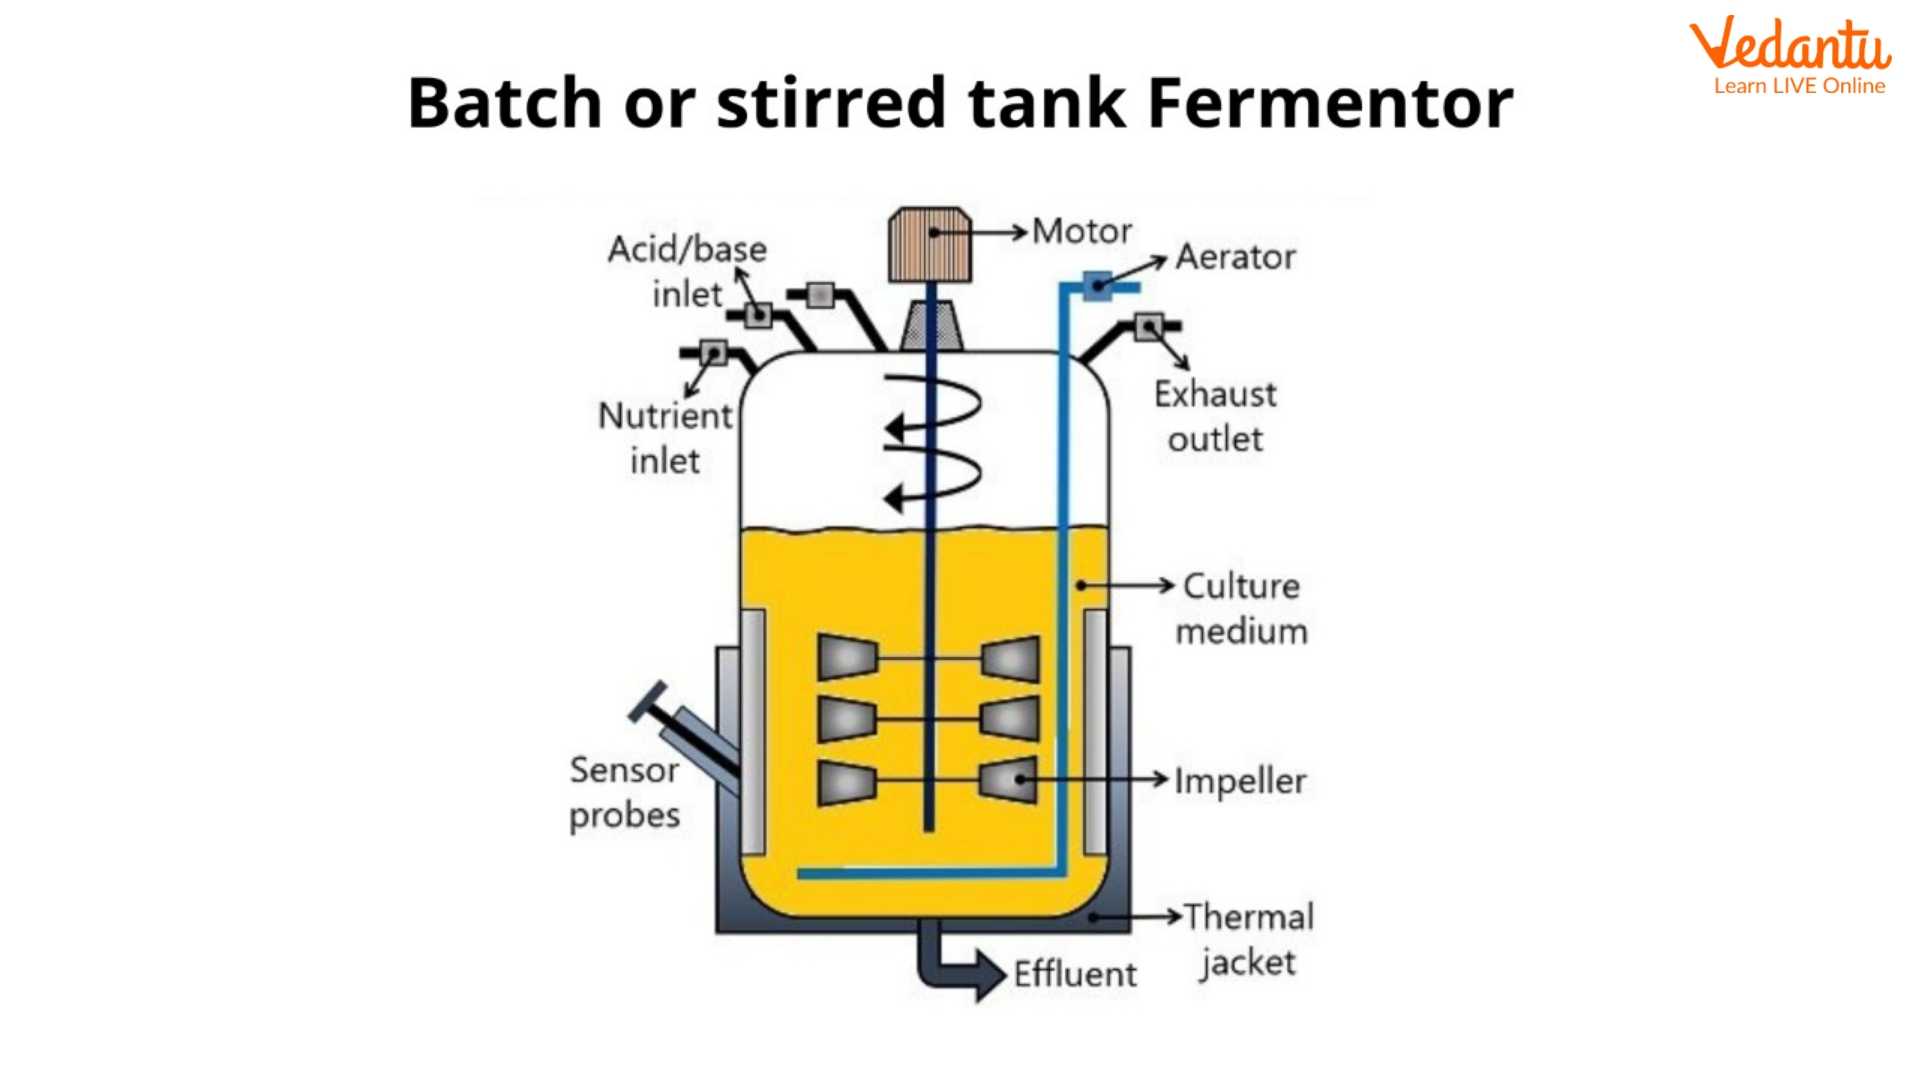 Batch fermenter